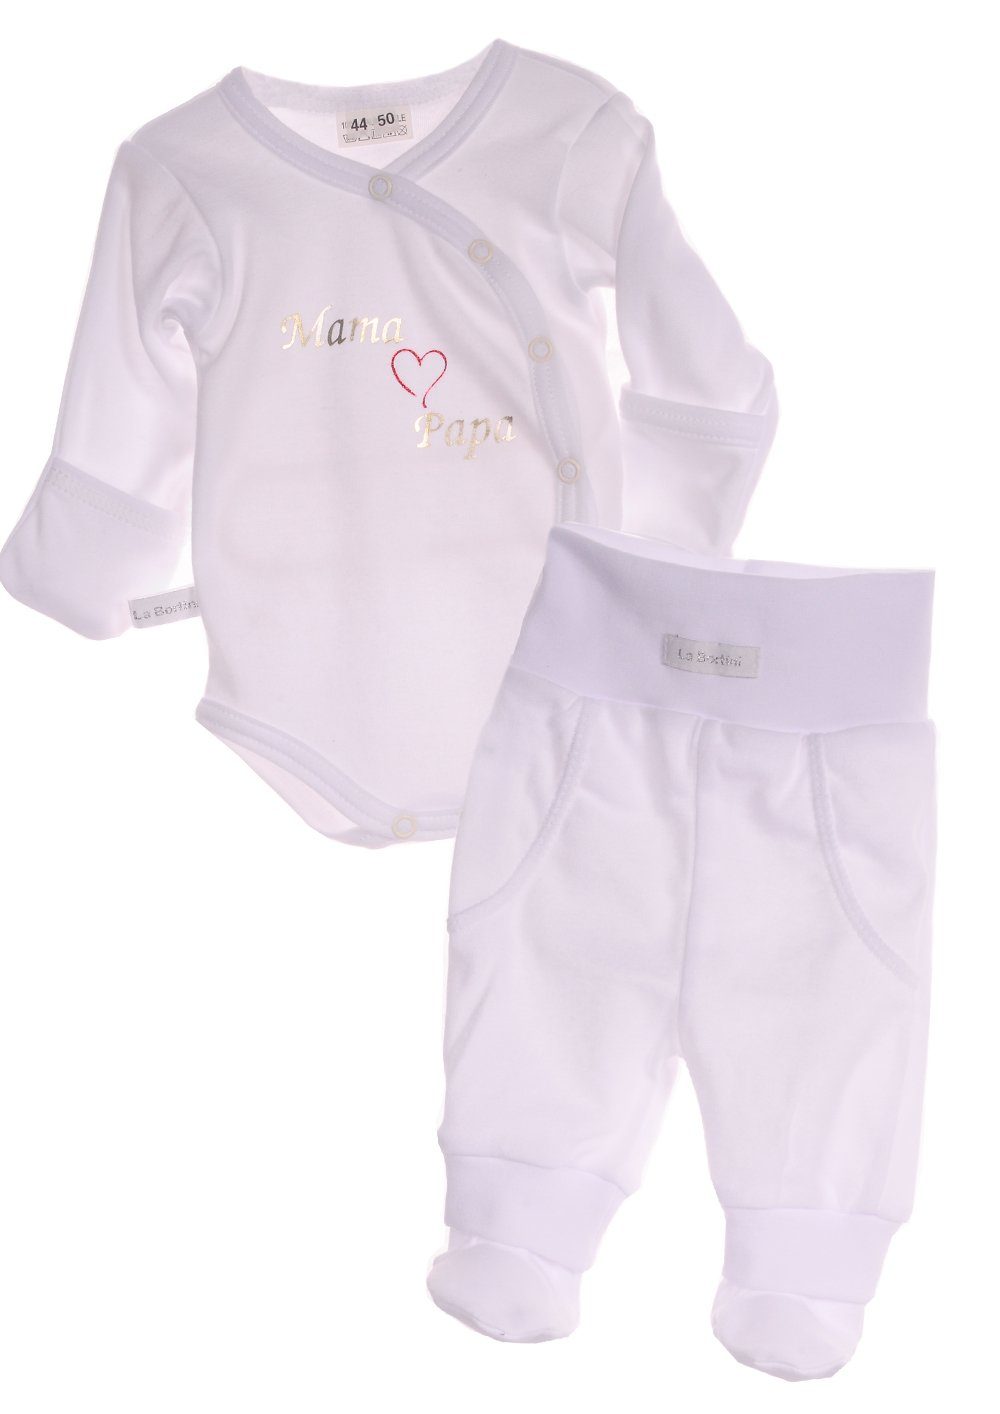 La Bortini Body & Hose Wickelbody Hose Baby Anzug 2tlg Set in Weiß Body 44 50 56 62 68 74 80